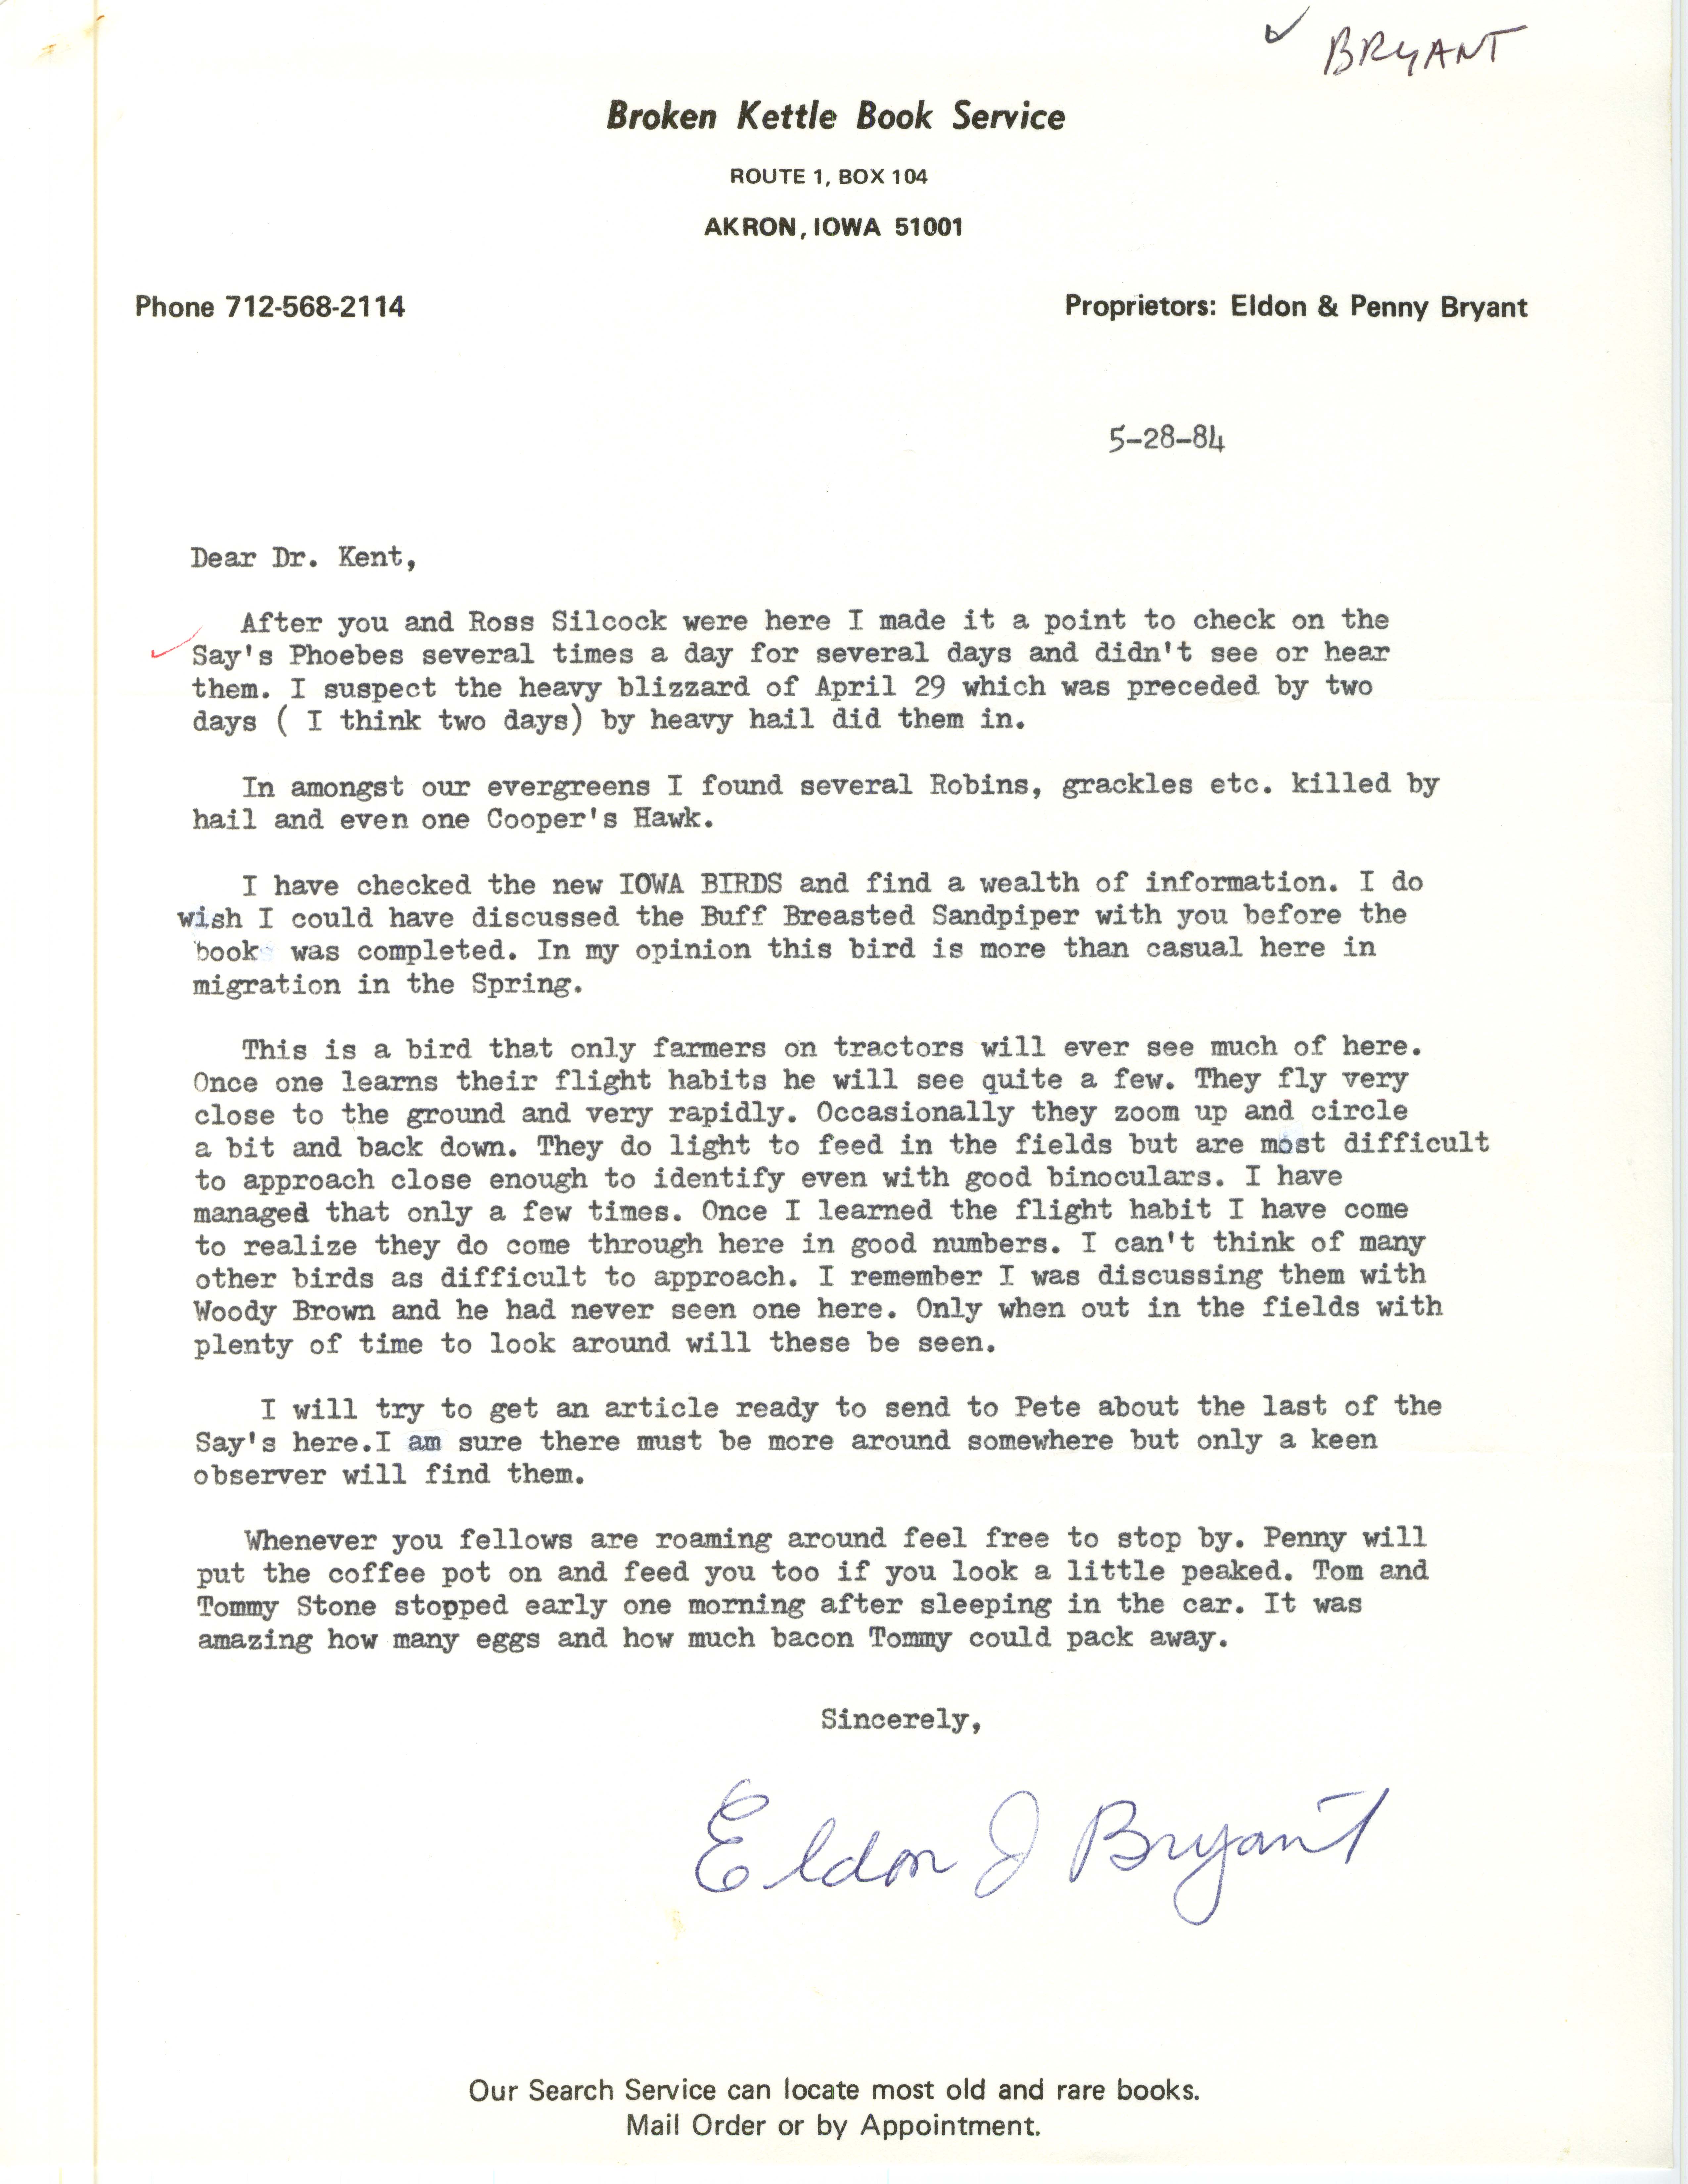 Eldon J. Bryant letter to Thomas H. Kent regarding spring bird sightings, Akron, Iowa, May 28, 1984